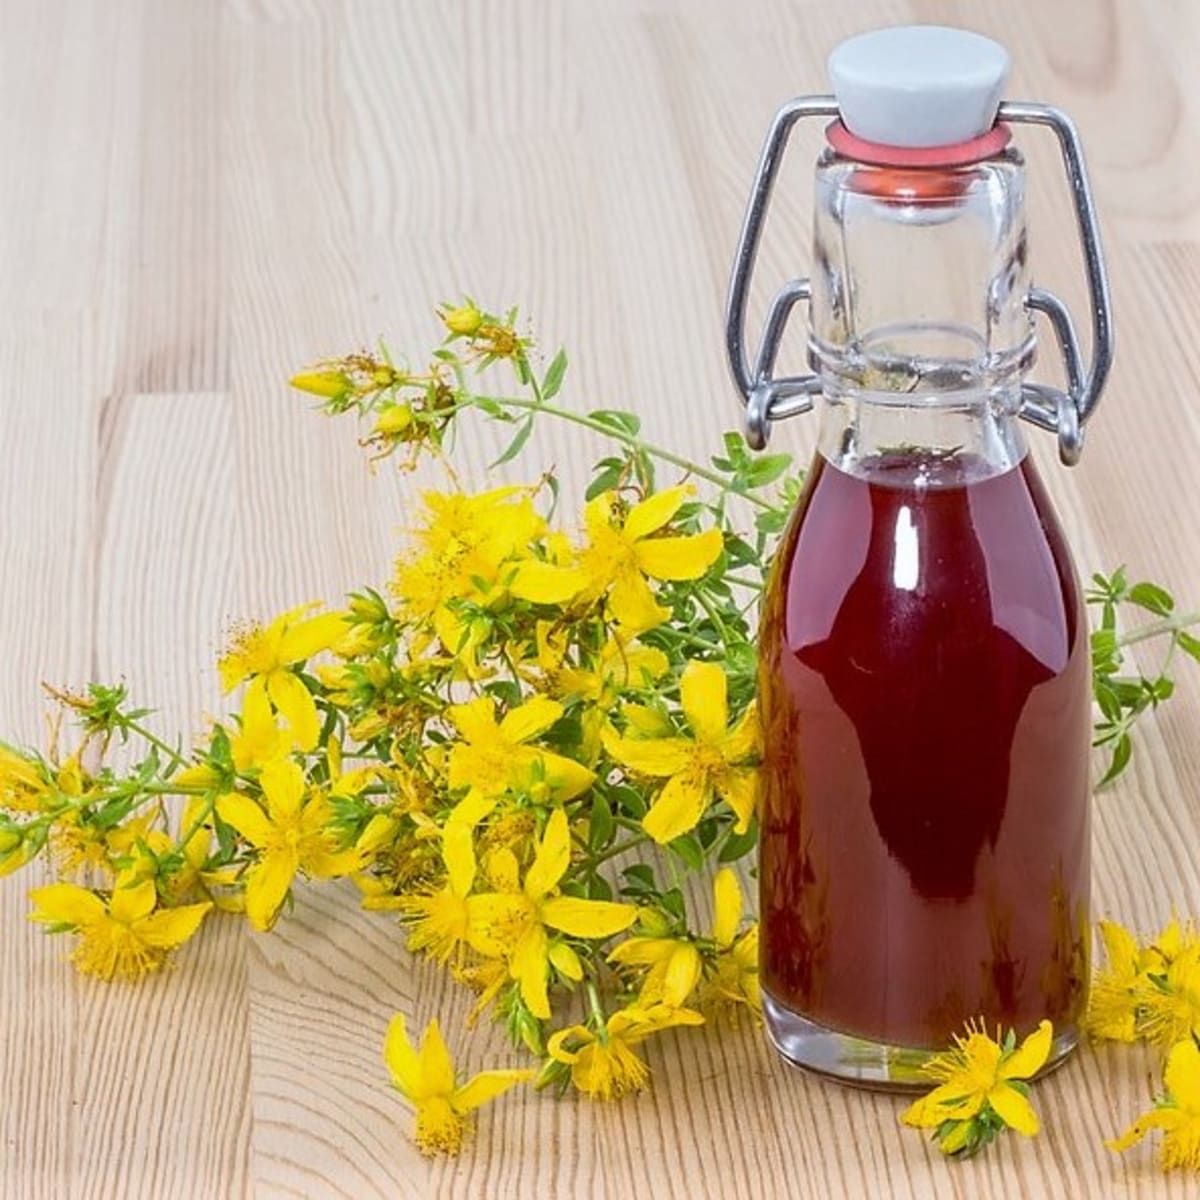 Třezalkový Janův olej z čerstvých květů je červený, když použijeme květy sušené, bude žlutý